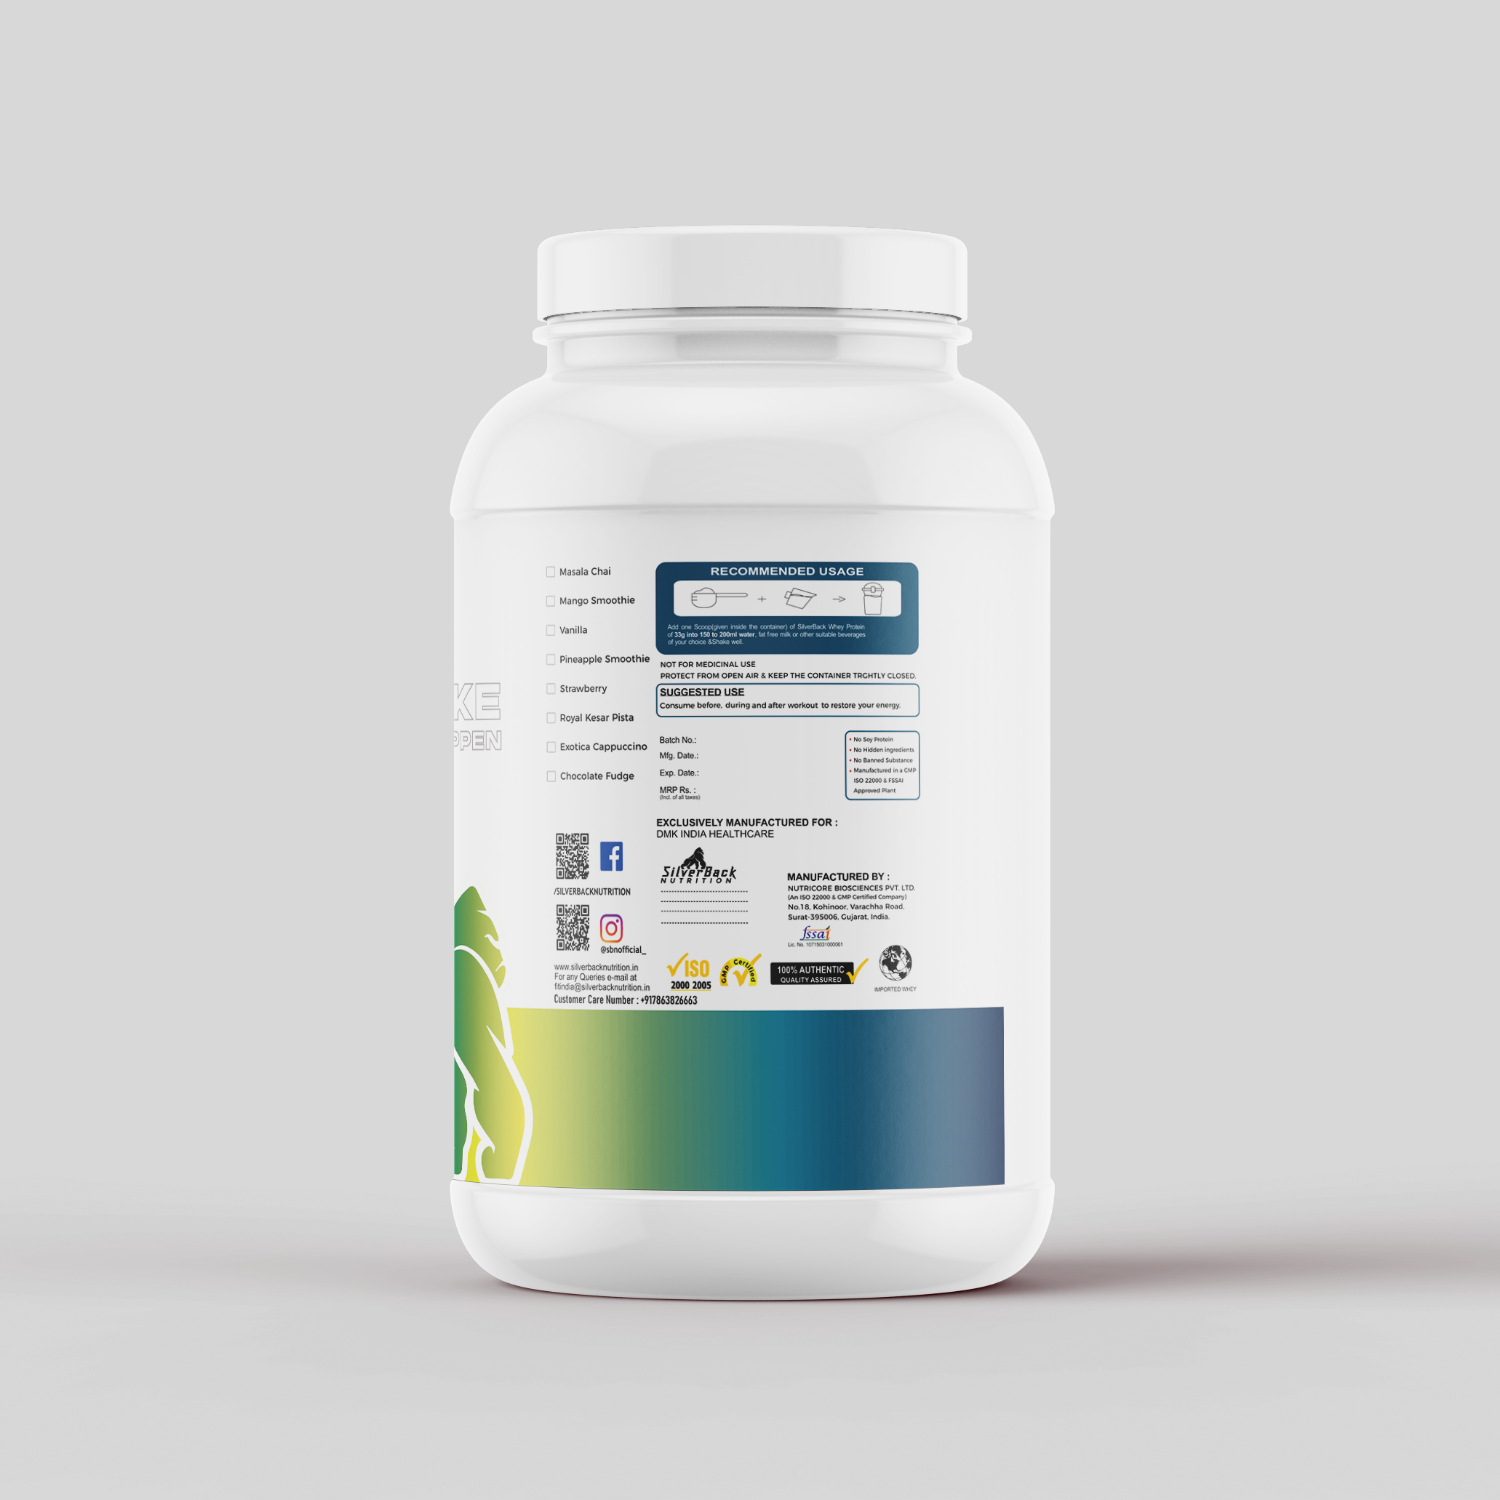 whey protein hybrid powder label - SilverBack Nutrition